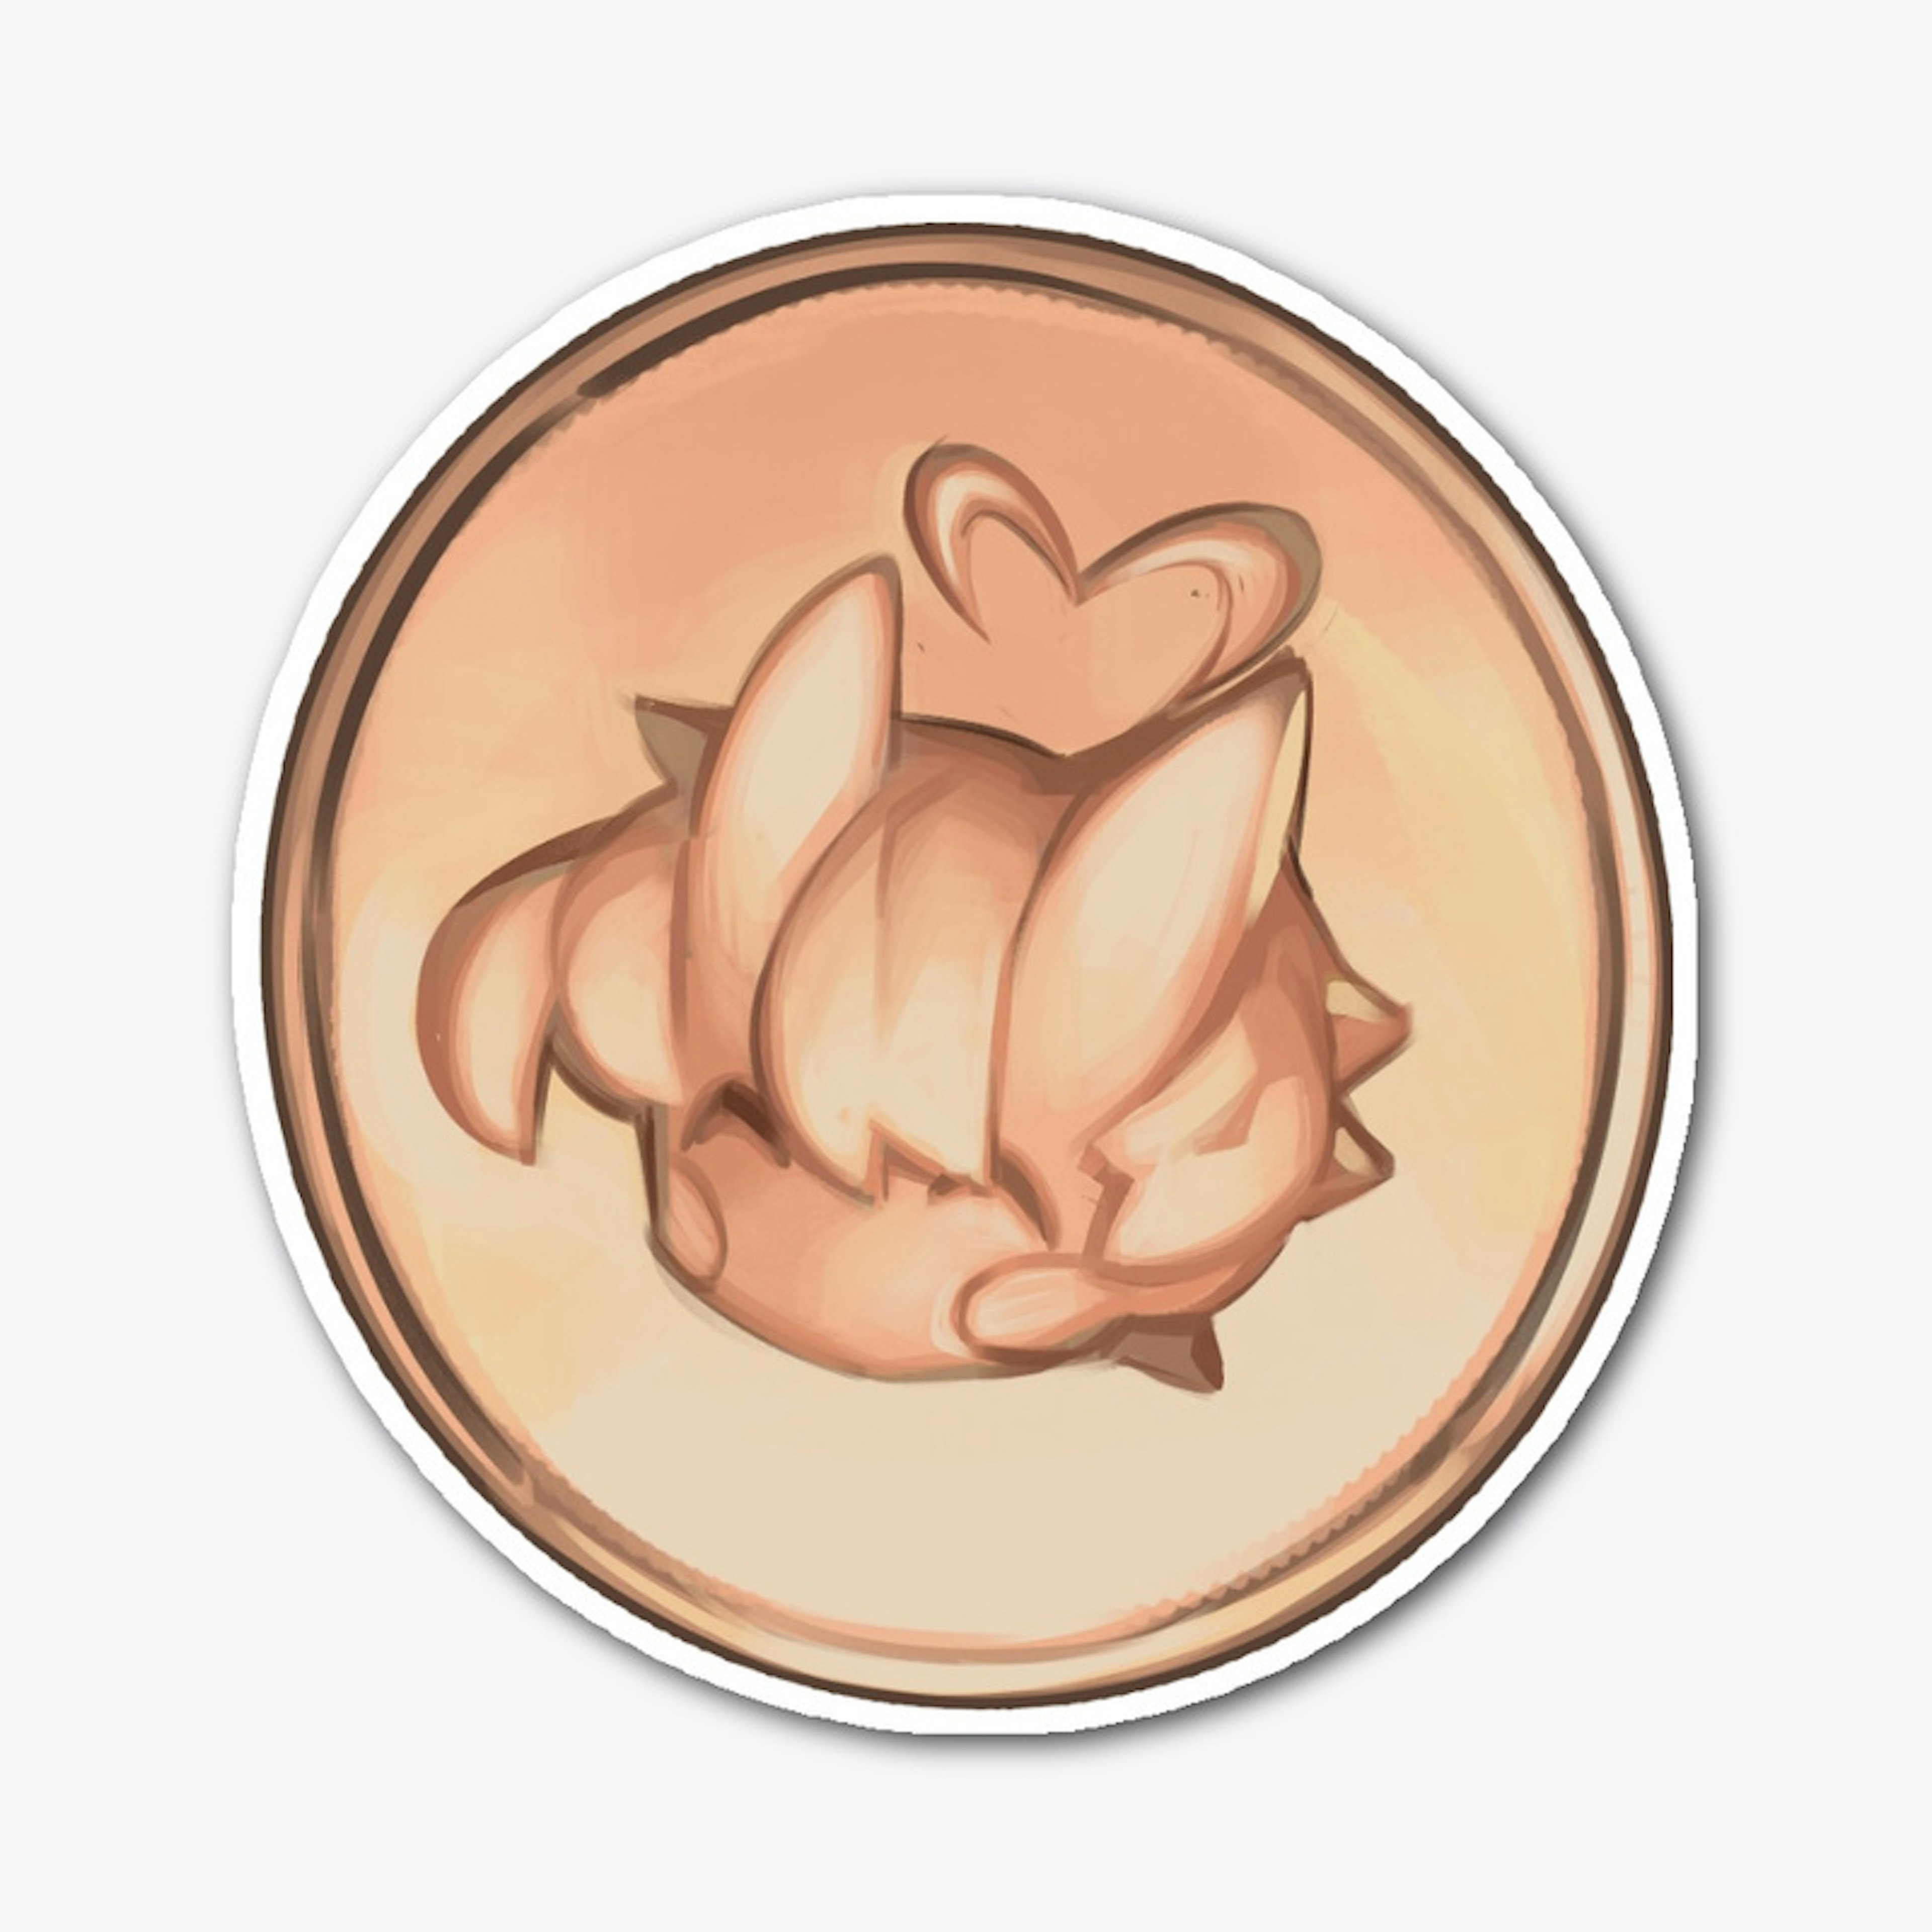 Kana Coin